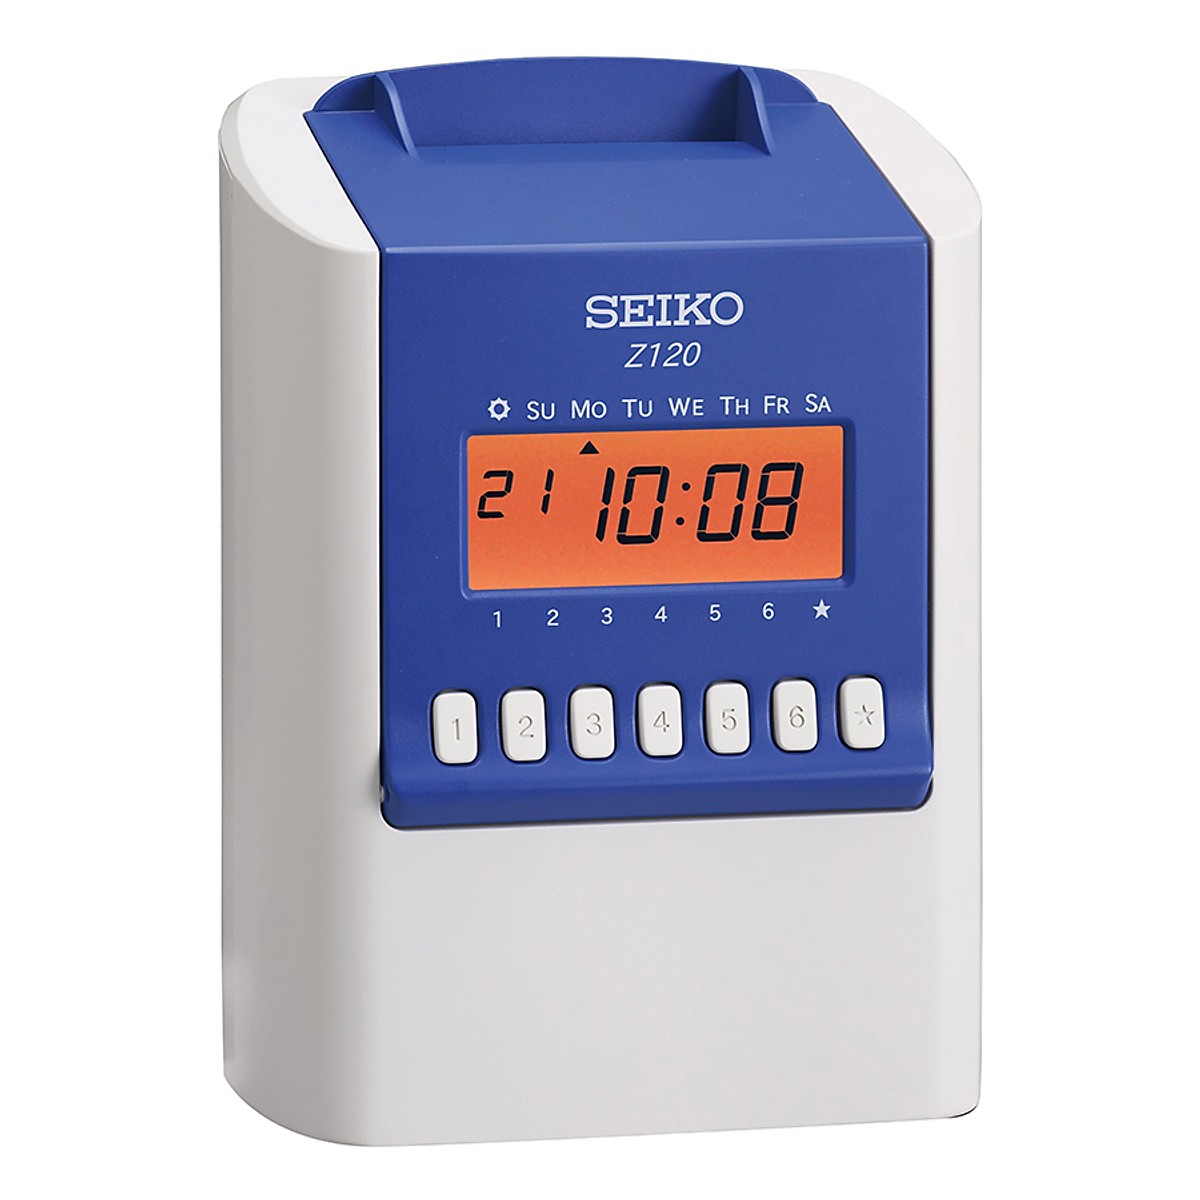 Máy chấm công thẻ giấy SEIKO Z120 - hàng nhập khẩu